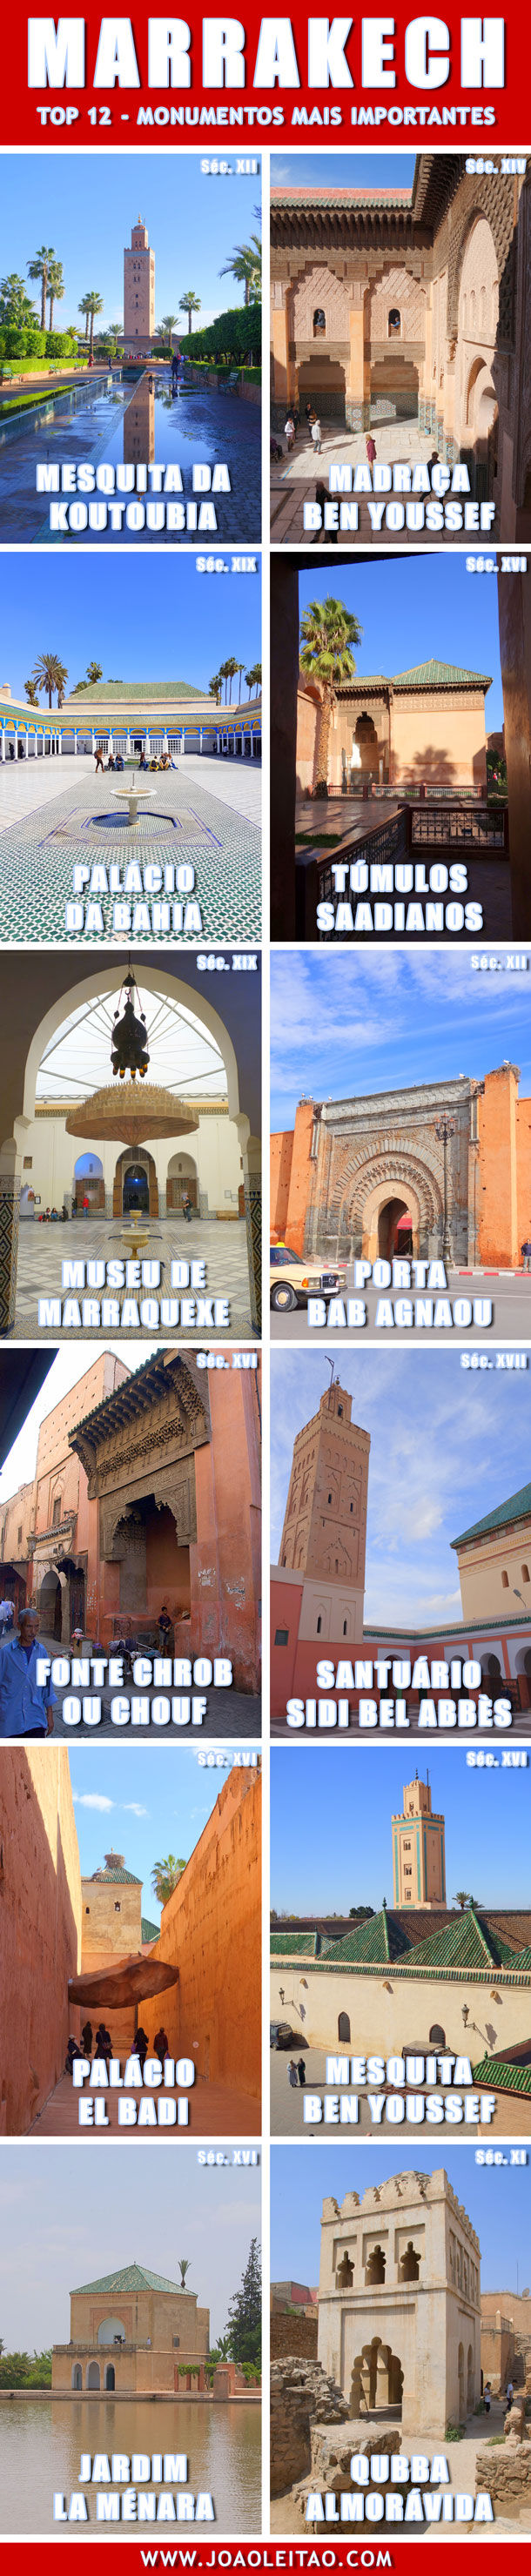 Marrakech - Top 12 Monumentos mais importantes